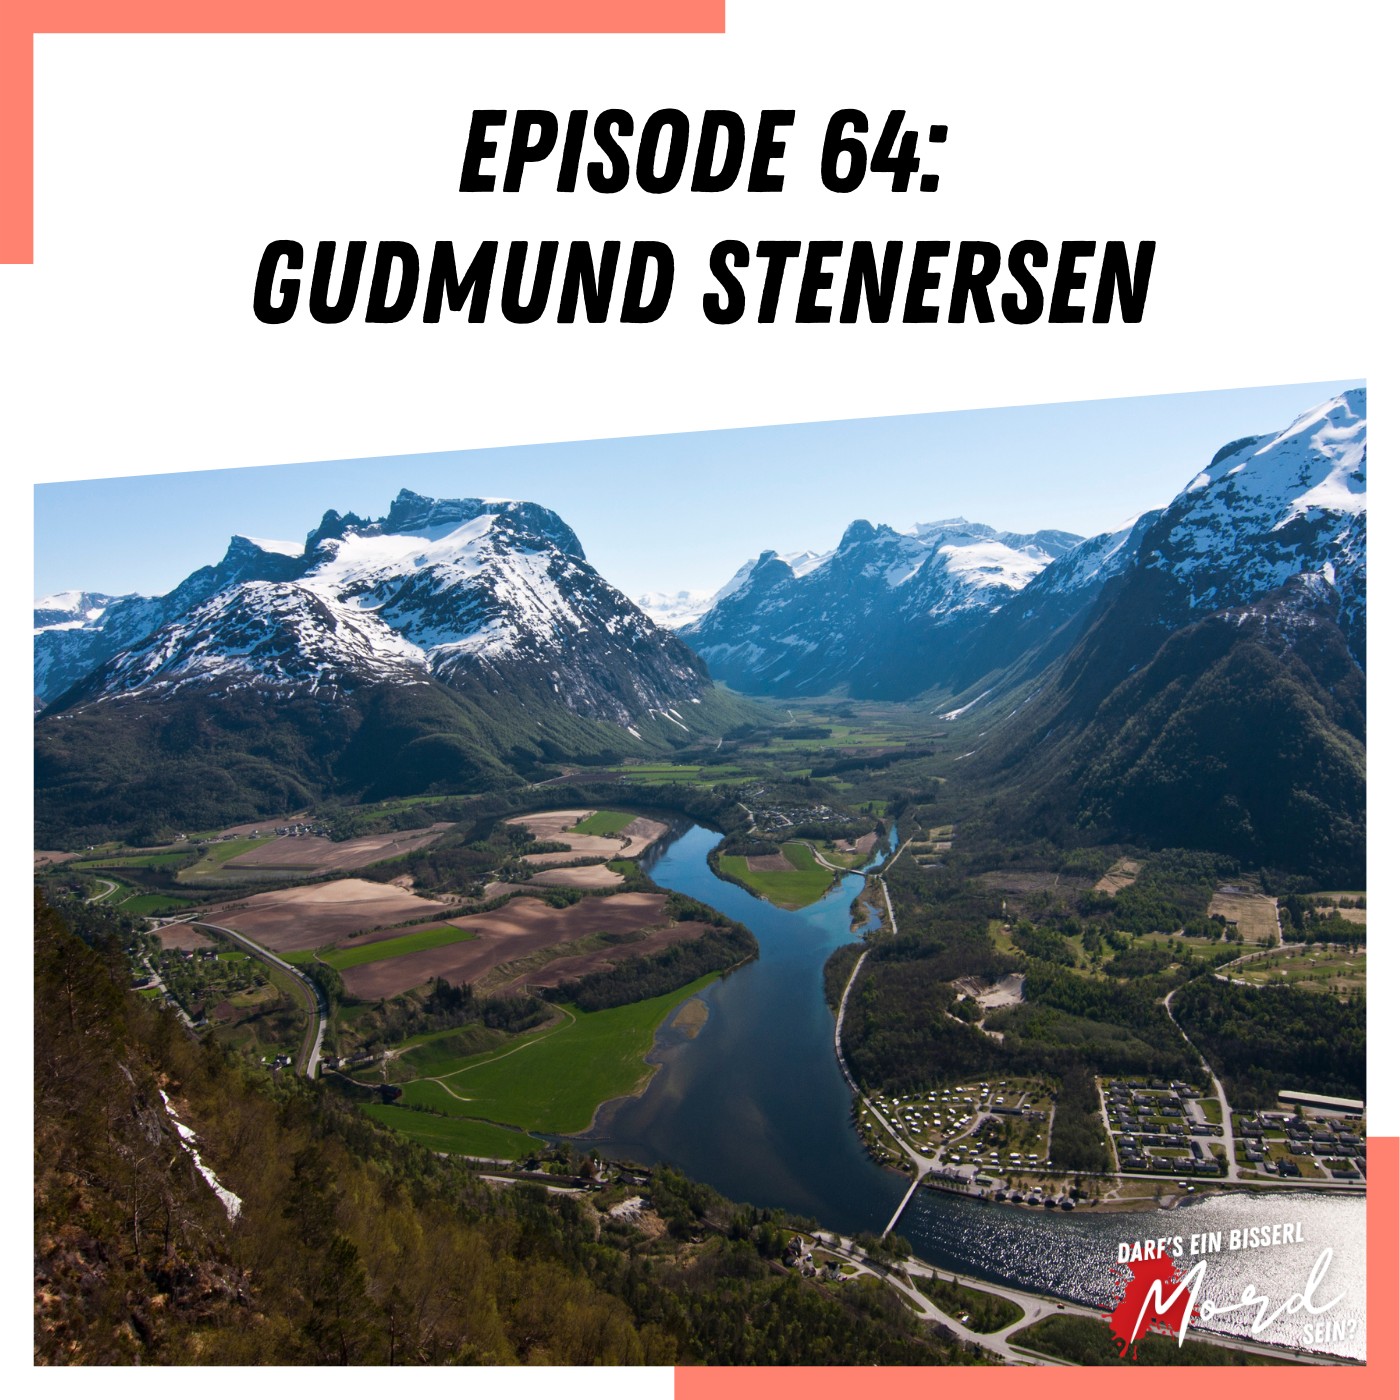 Episode 64: Gudmund Stenersen - UNGELÖST